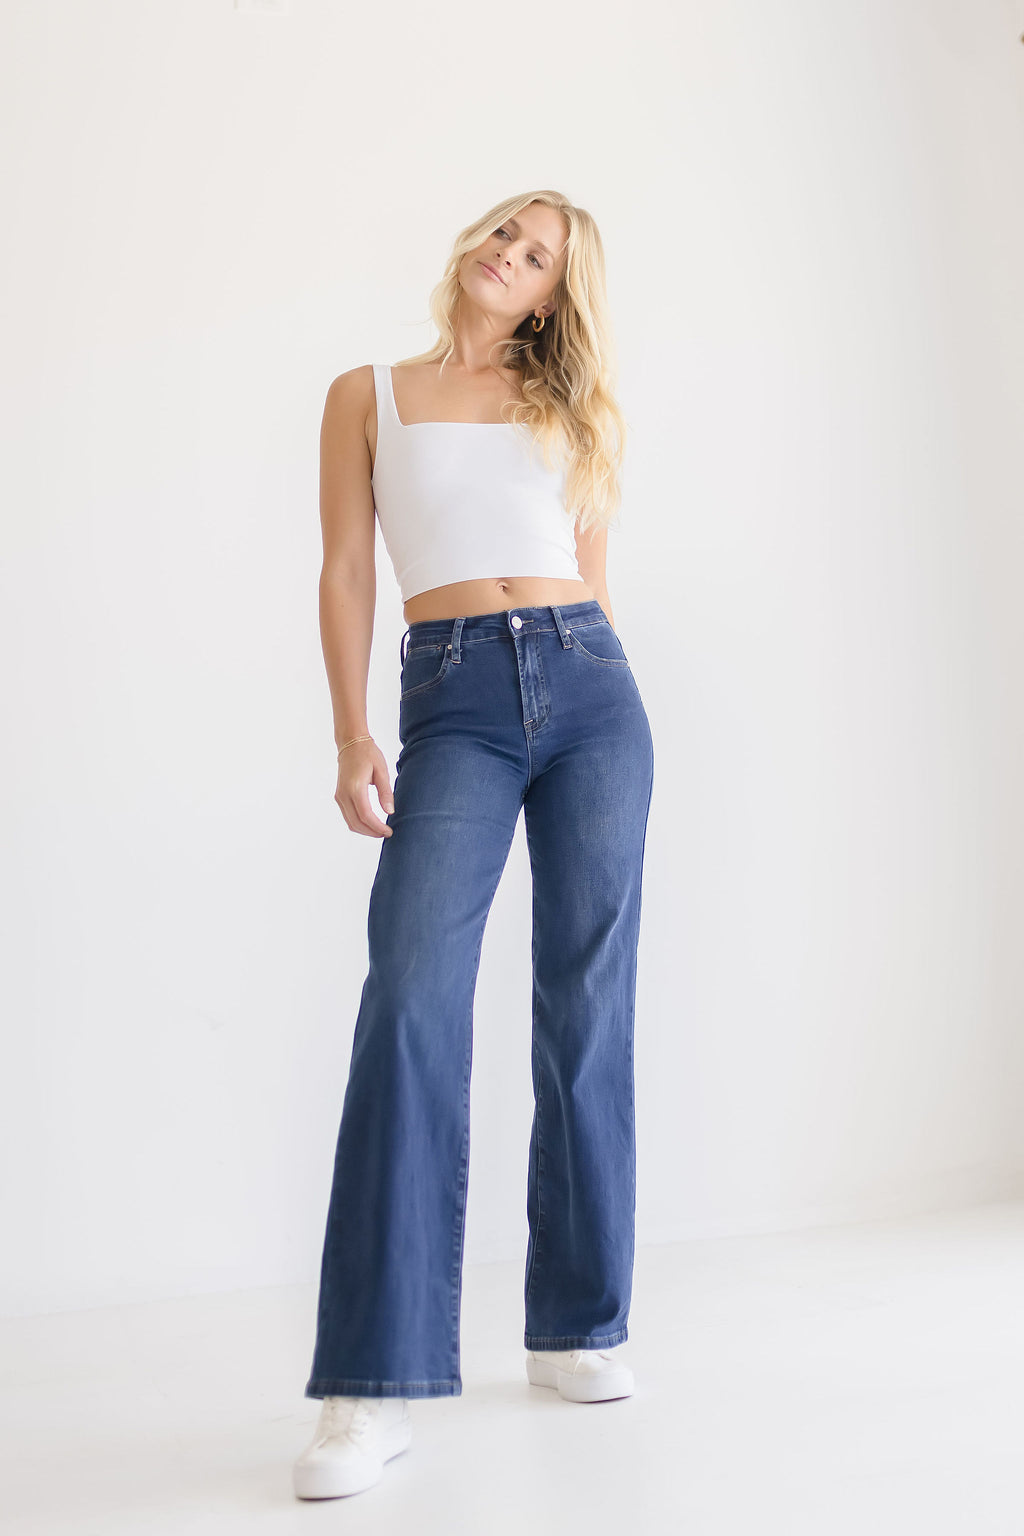 Women's Wide-Leg & Flared Jeans, Shop Online